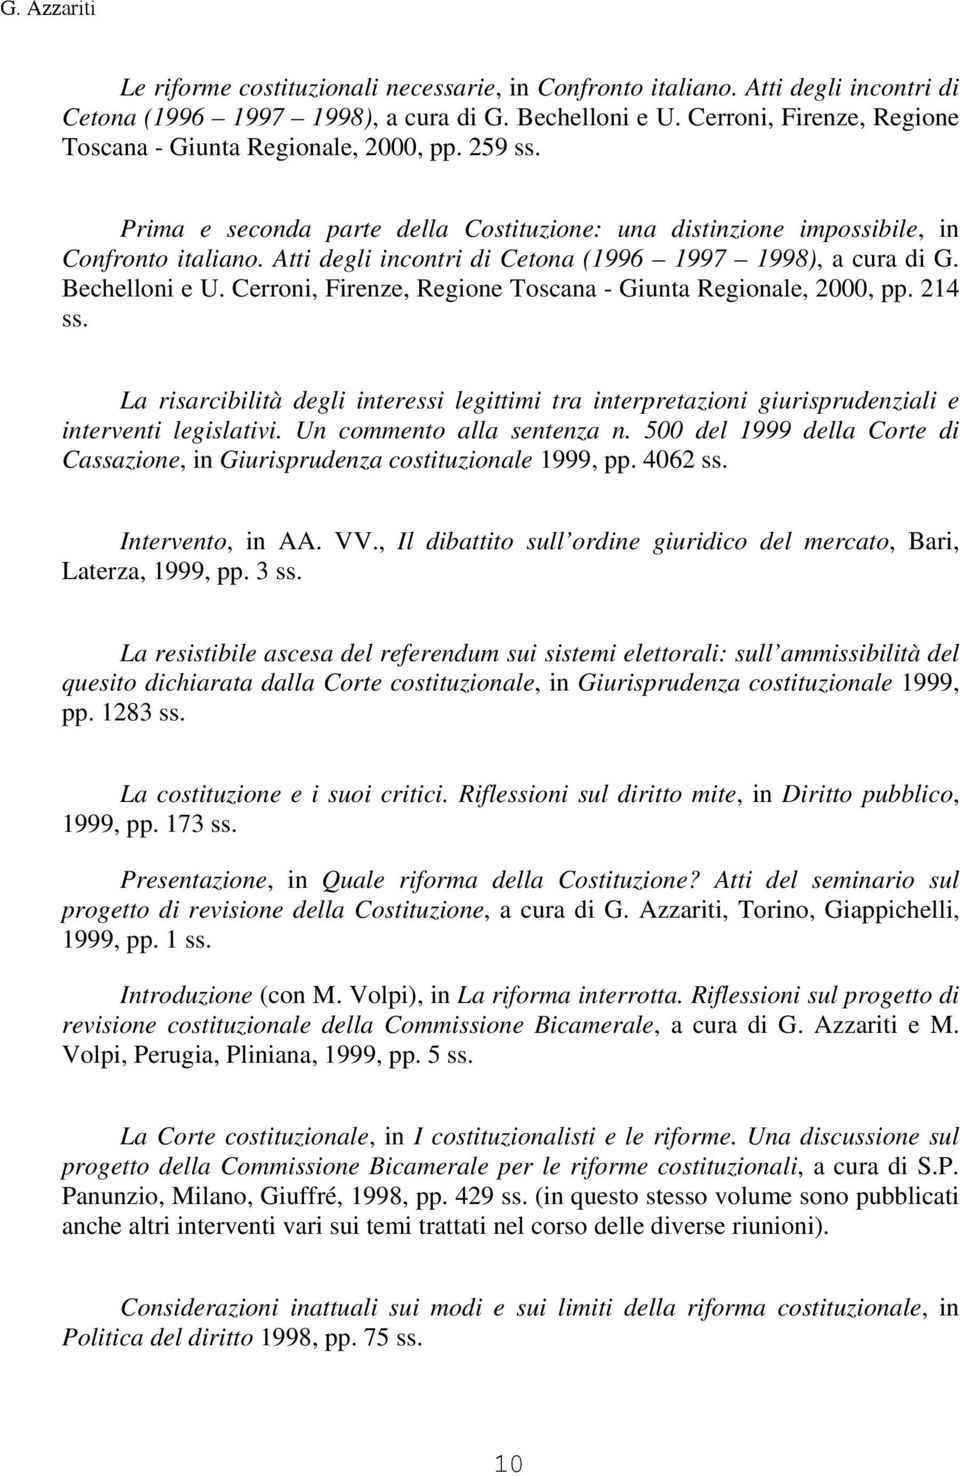 Atti degli incontri di Cetona (1996 1997 1998), a cura di G. Bechelloni e U. Cerroni, Firenze, Regione Toscana - Giunta Regionale, 2000, pp. 214 ss.